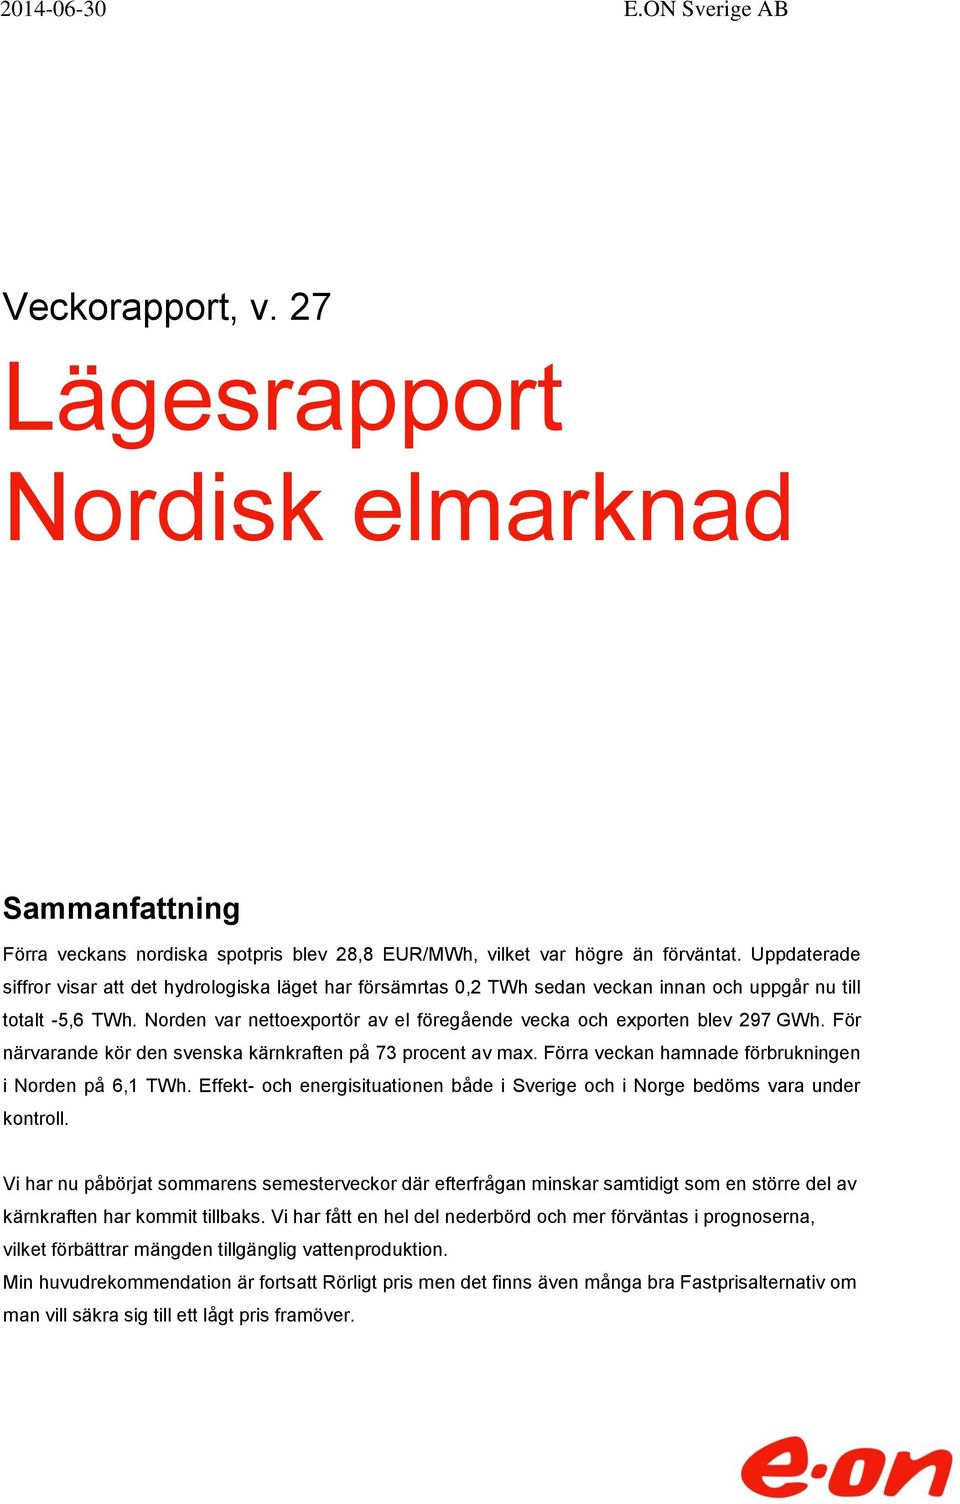 Norden var nettoexportör av el föregående vecka och exporten blev 297 GWh. För närvarande kör den svenska kärnkraften på 73 procent av max. Förra veckan hamnade förbrukningen i Norden på 6,1 TWh.